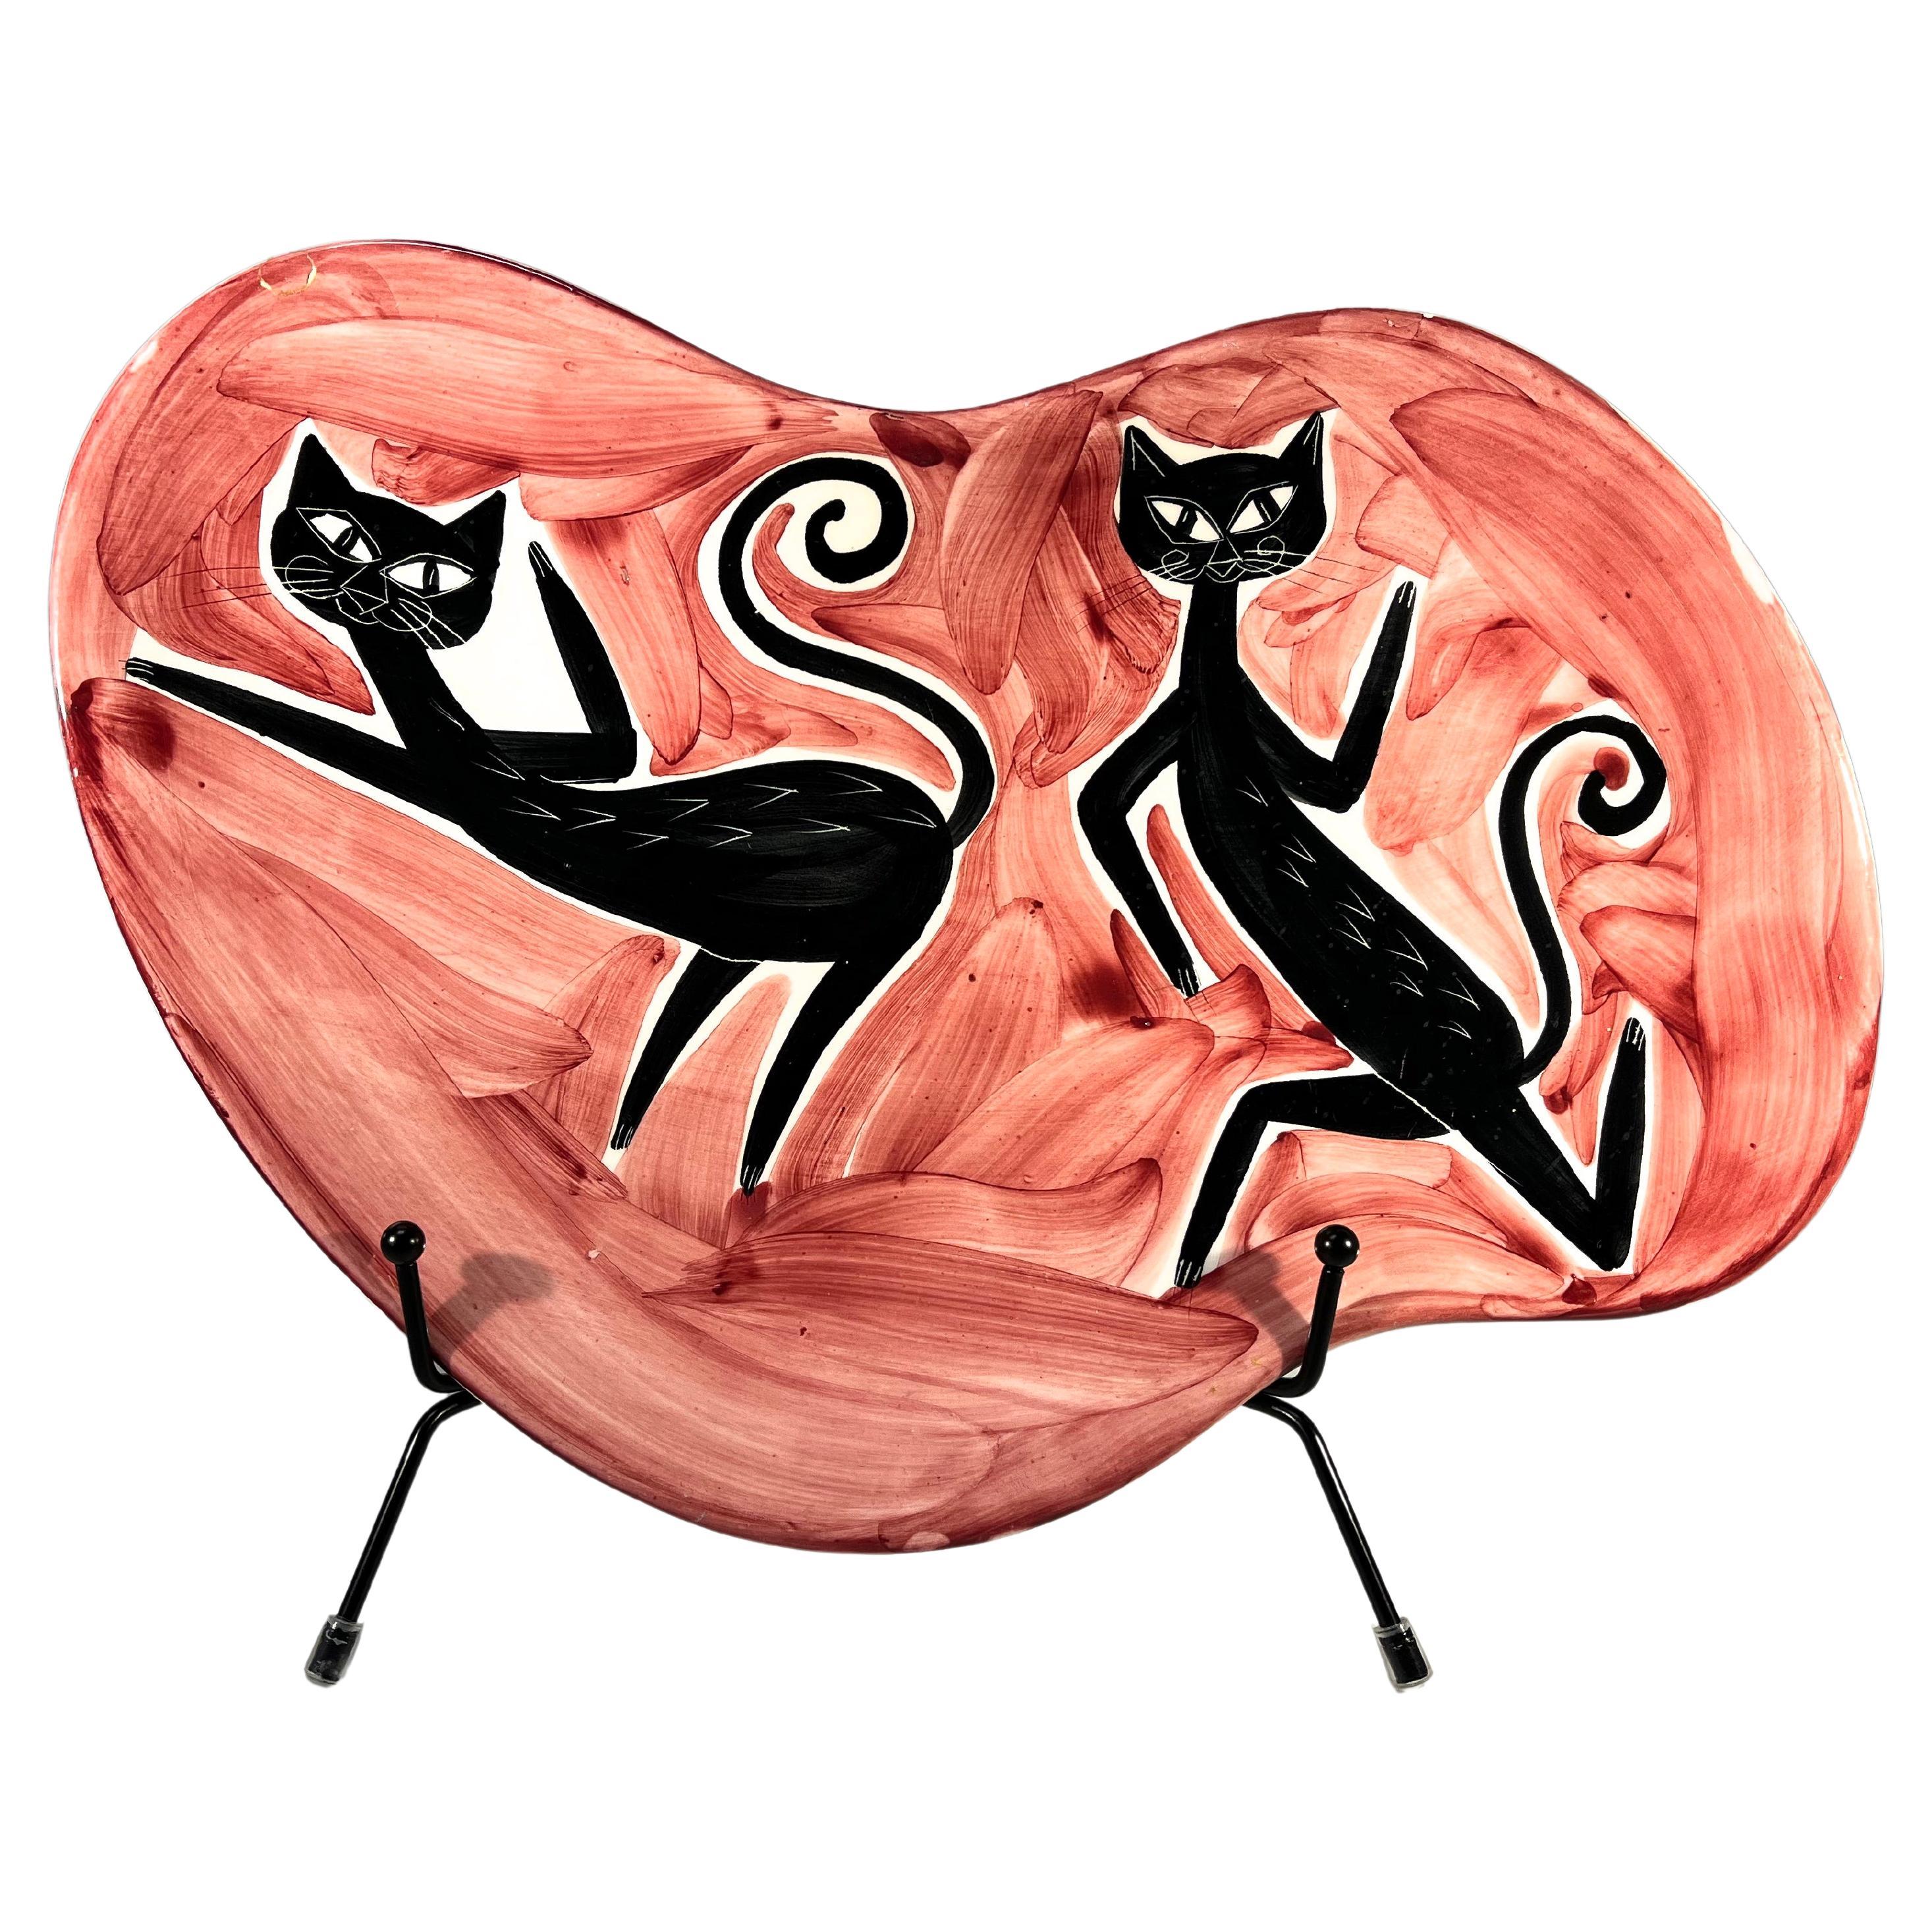 Abstrakte Alley Cats Keramik-Platte, Alessio Tasca zugeschrieben Nove, Italien